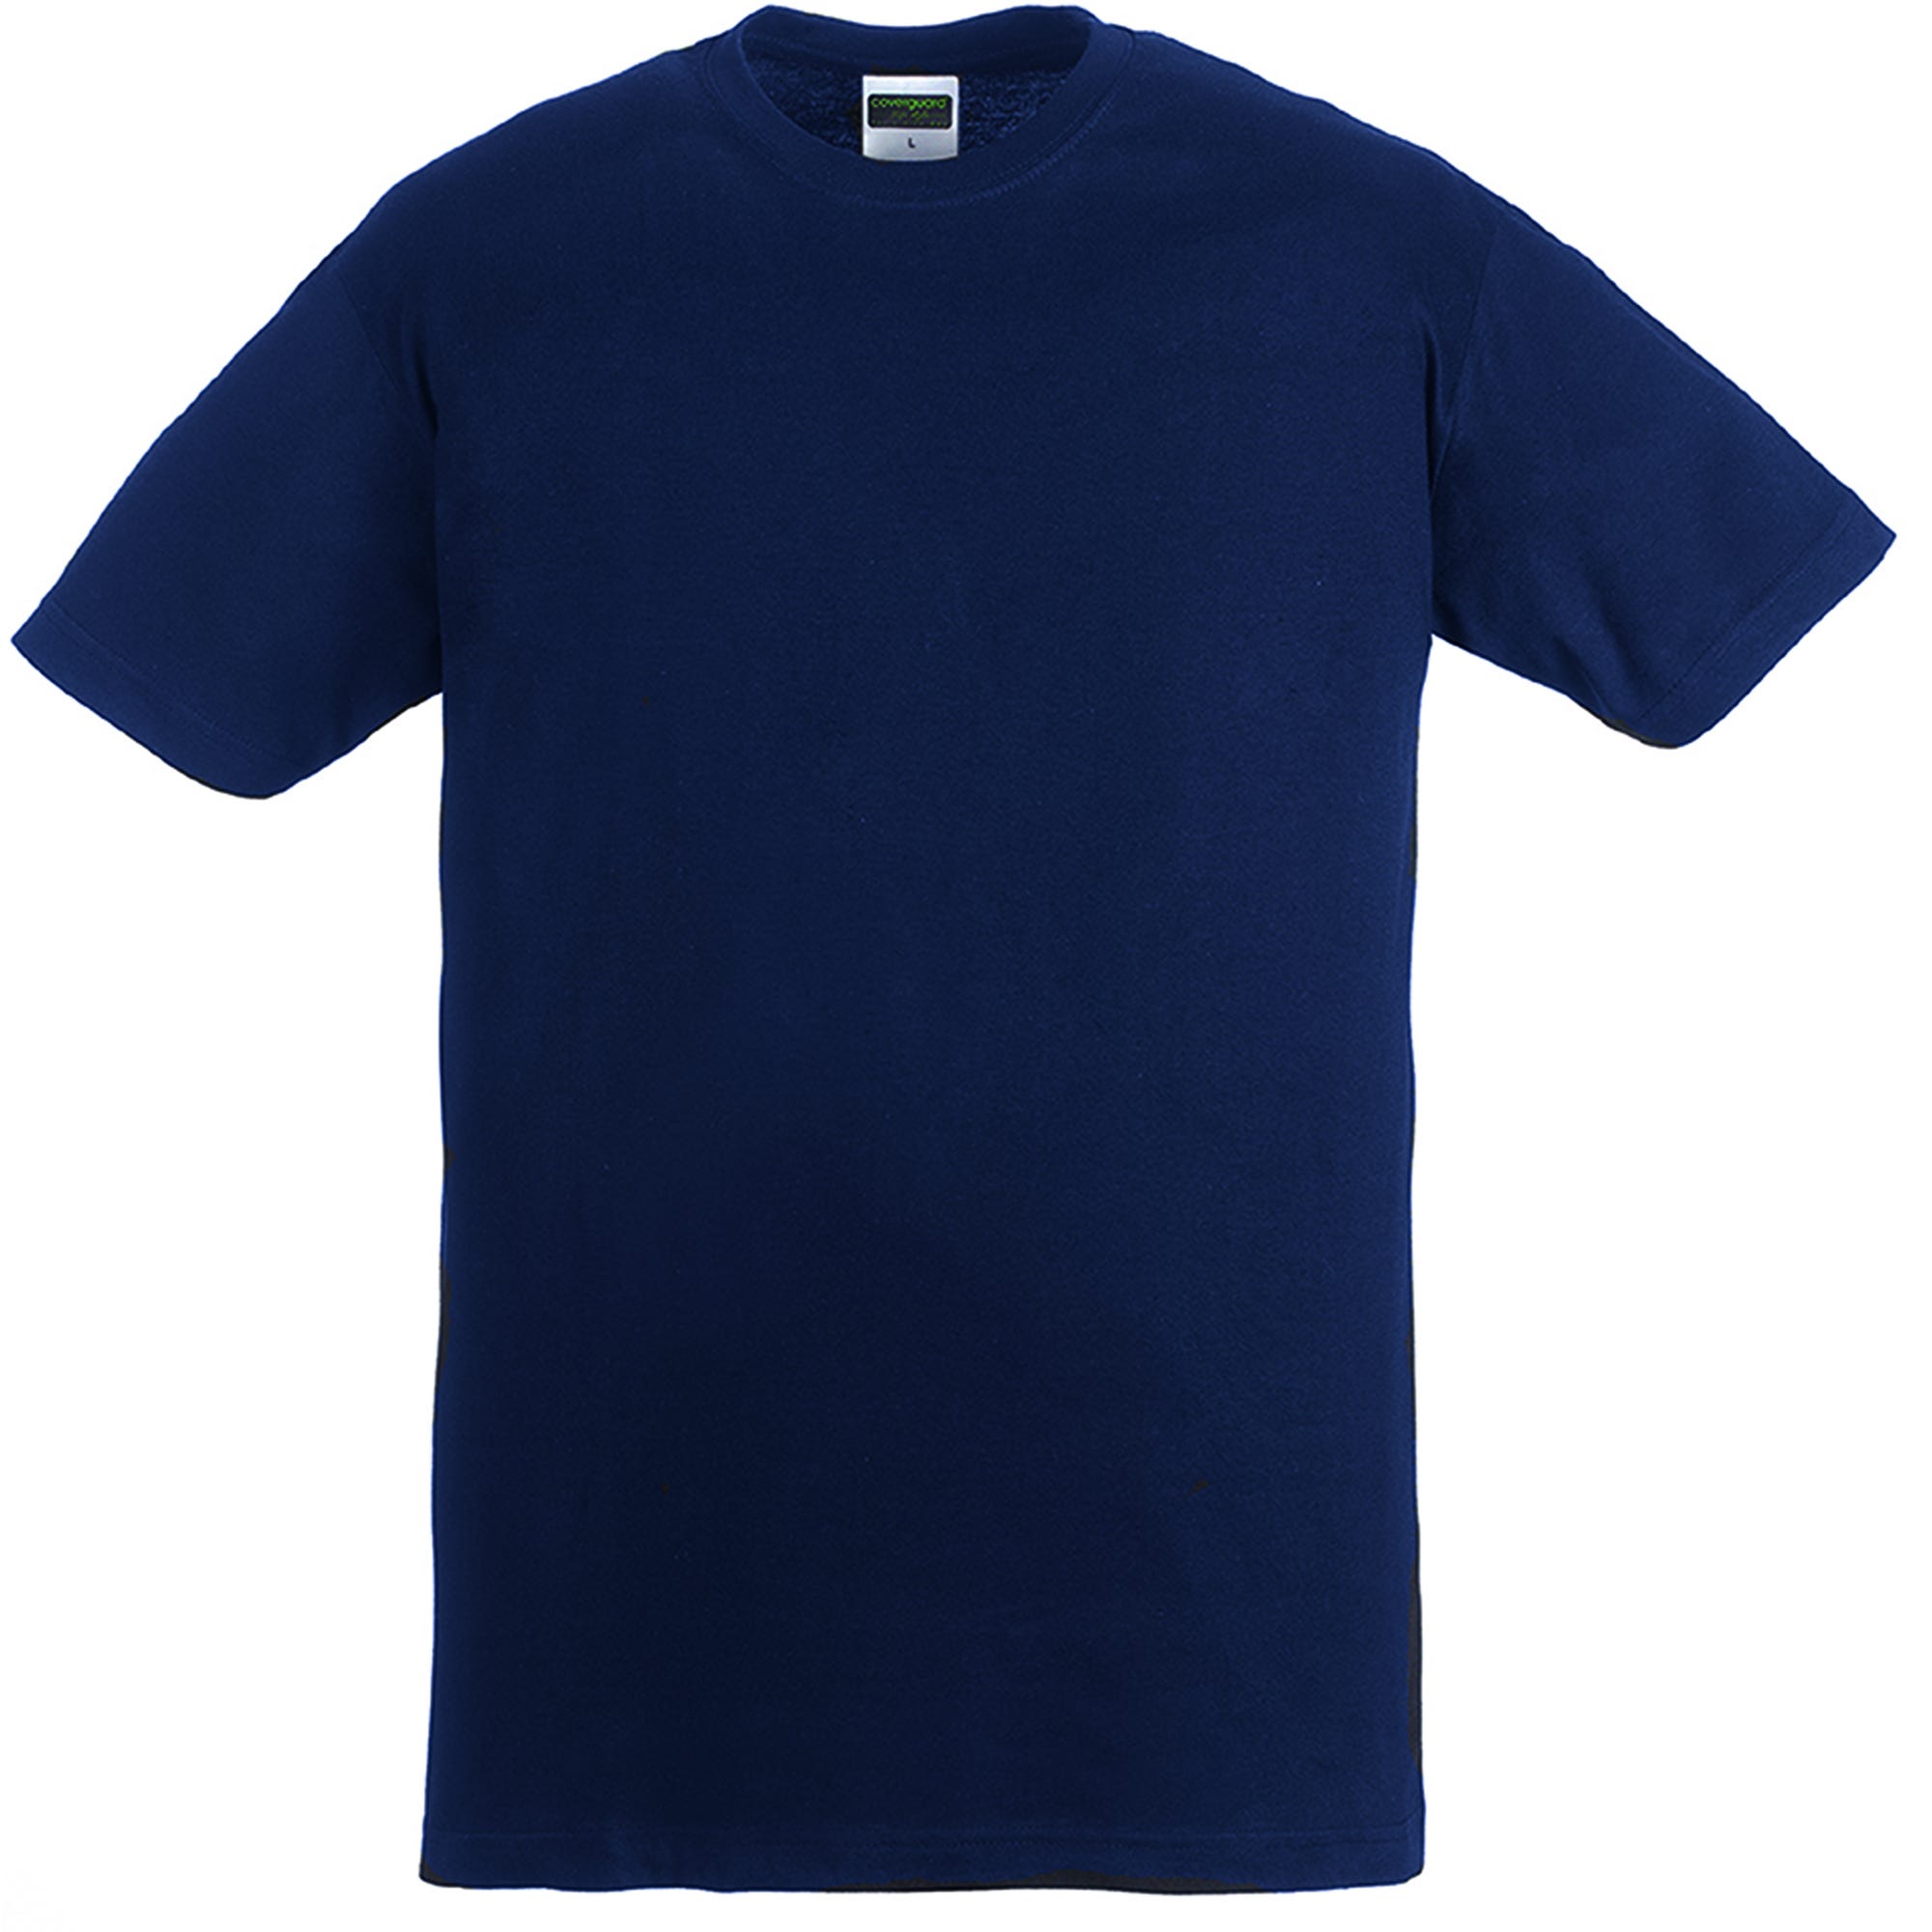 HIKE T-shirt MC marine, 100% coton, 190g/m² - COVERGUARD - Taille L 1